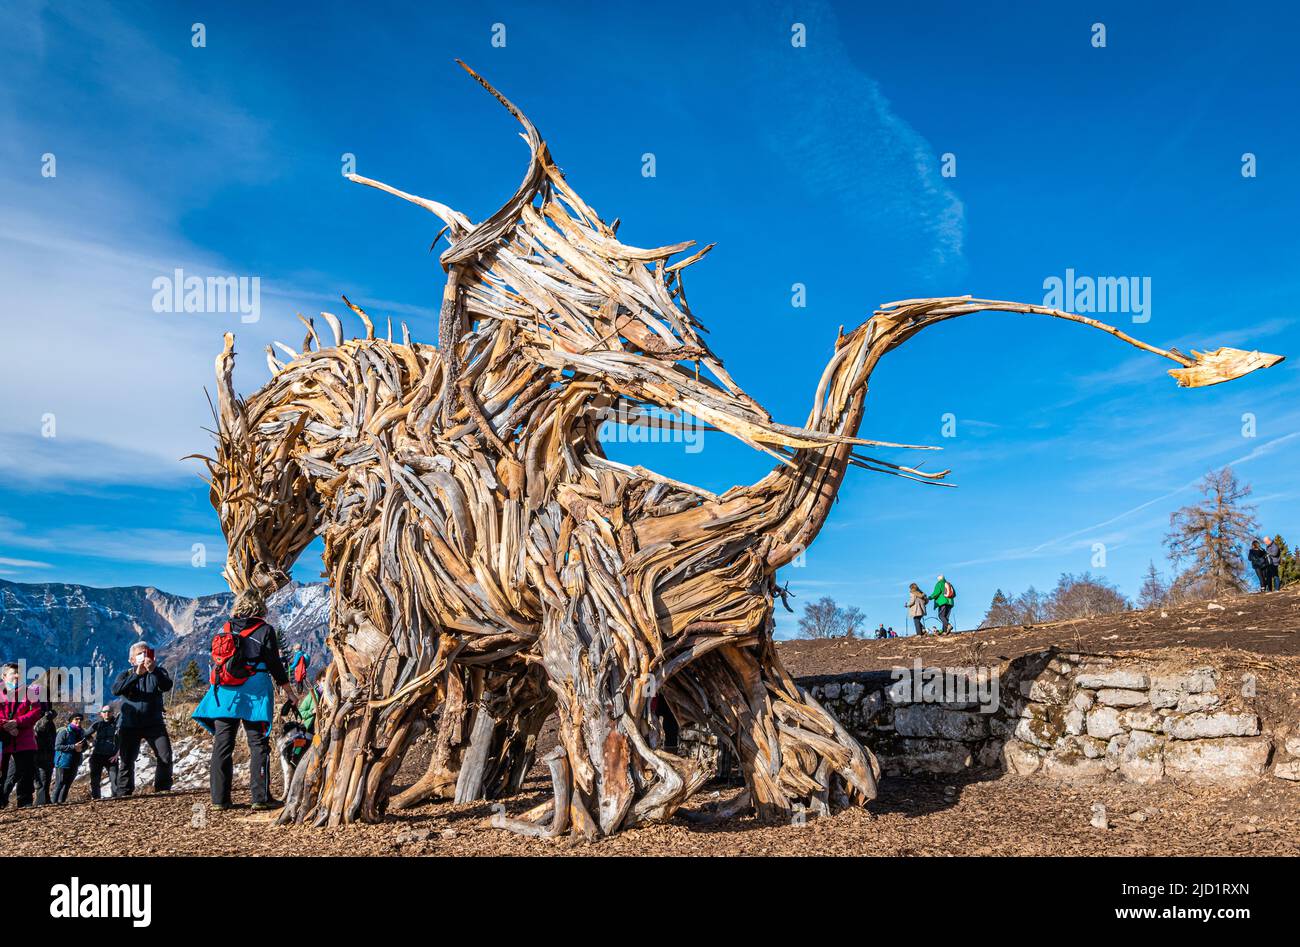 Drago Vaia (Drago Vaia). La scultura è opera dell'artista Marco Martalar. Lavarone, Alpe cimbra, Trentino Alto Adige, Italia settentrionale. Foto Stock